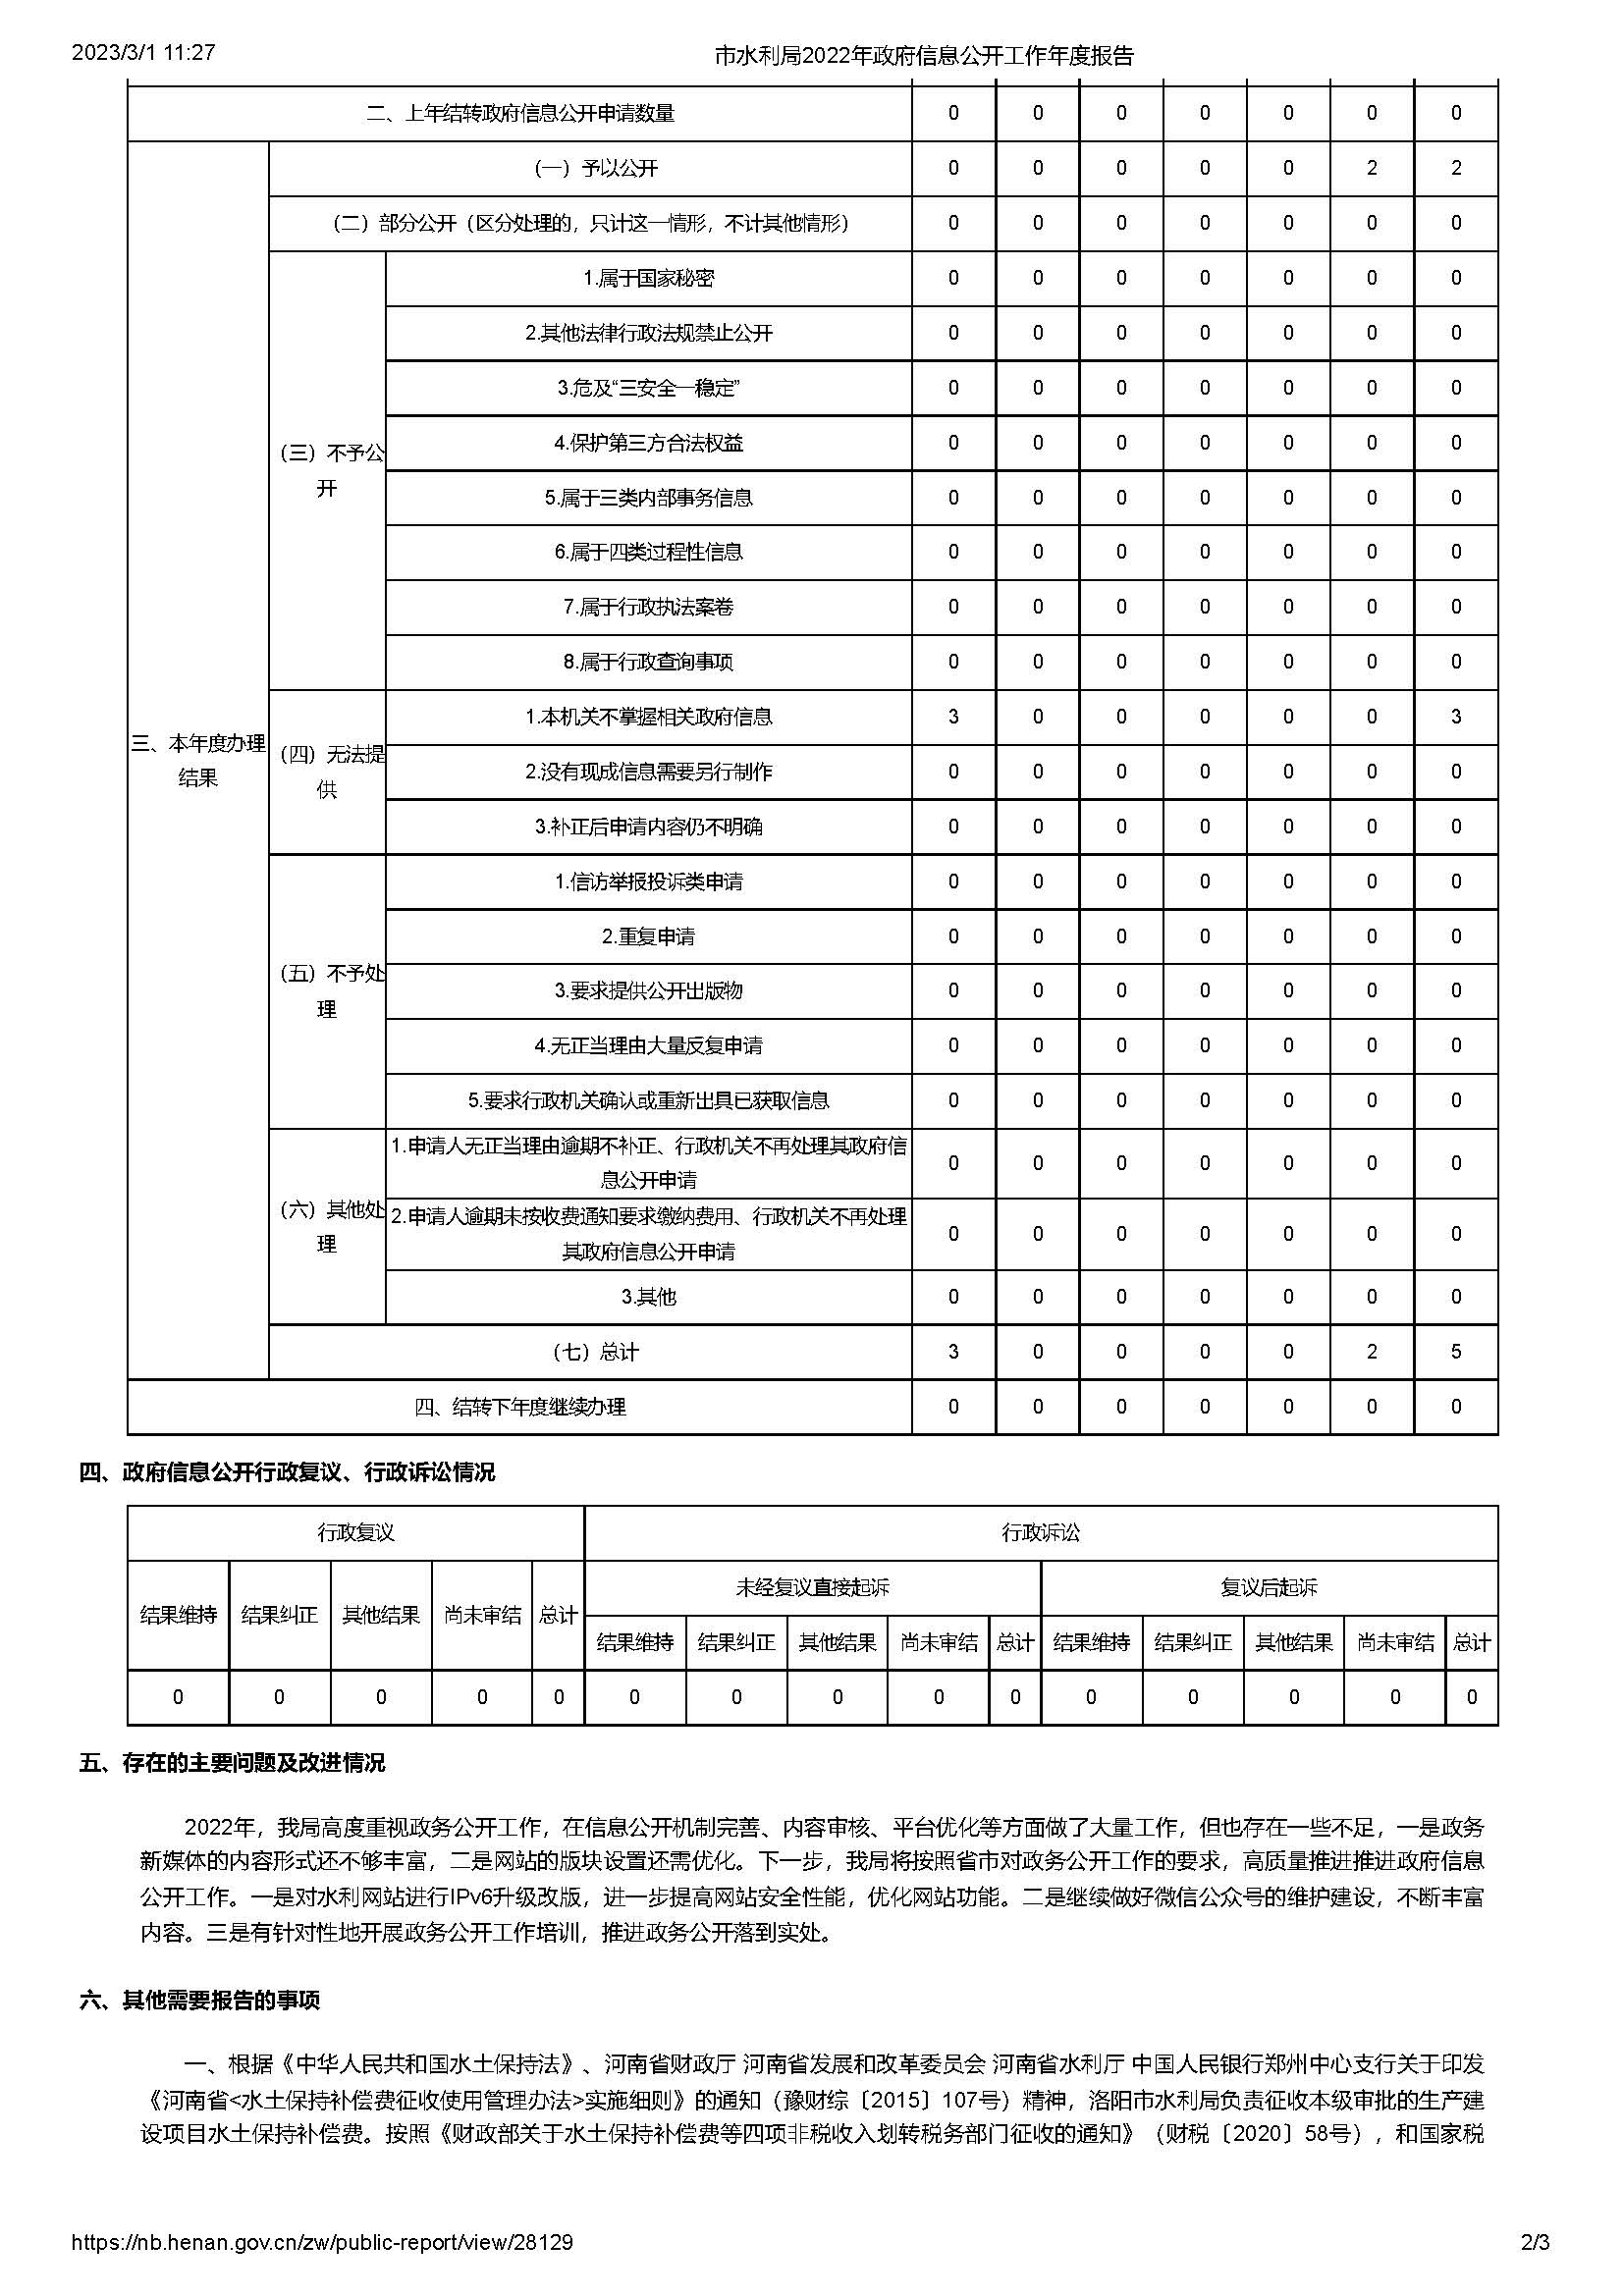 洛阳市水利局2022年政府信息公开工作年度报告(图2)